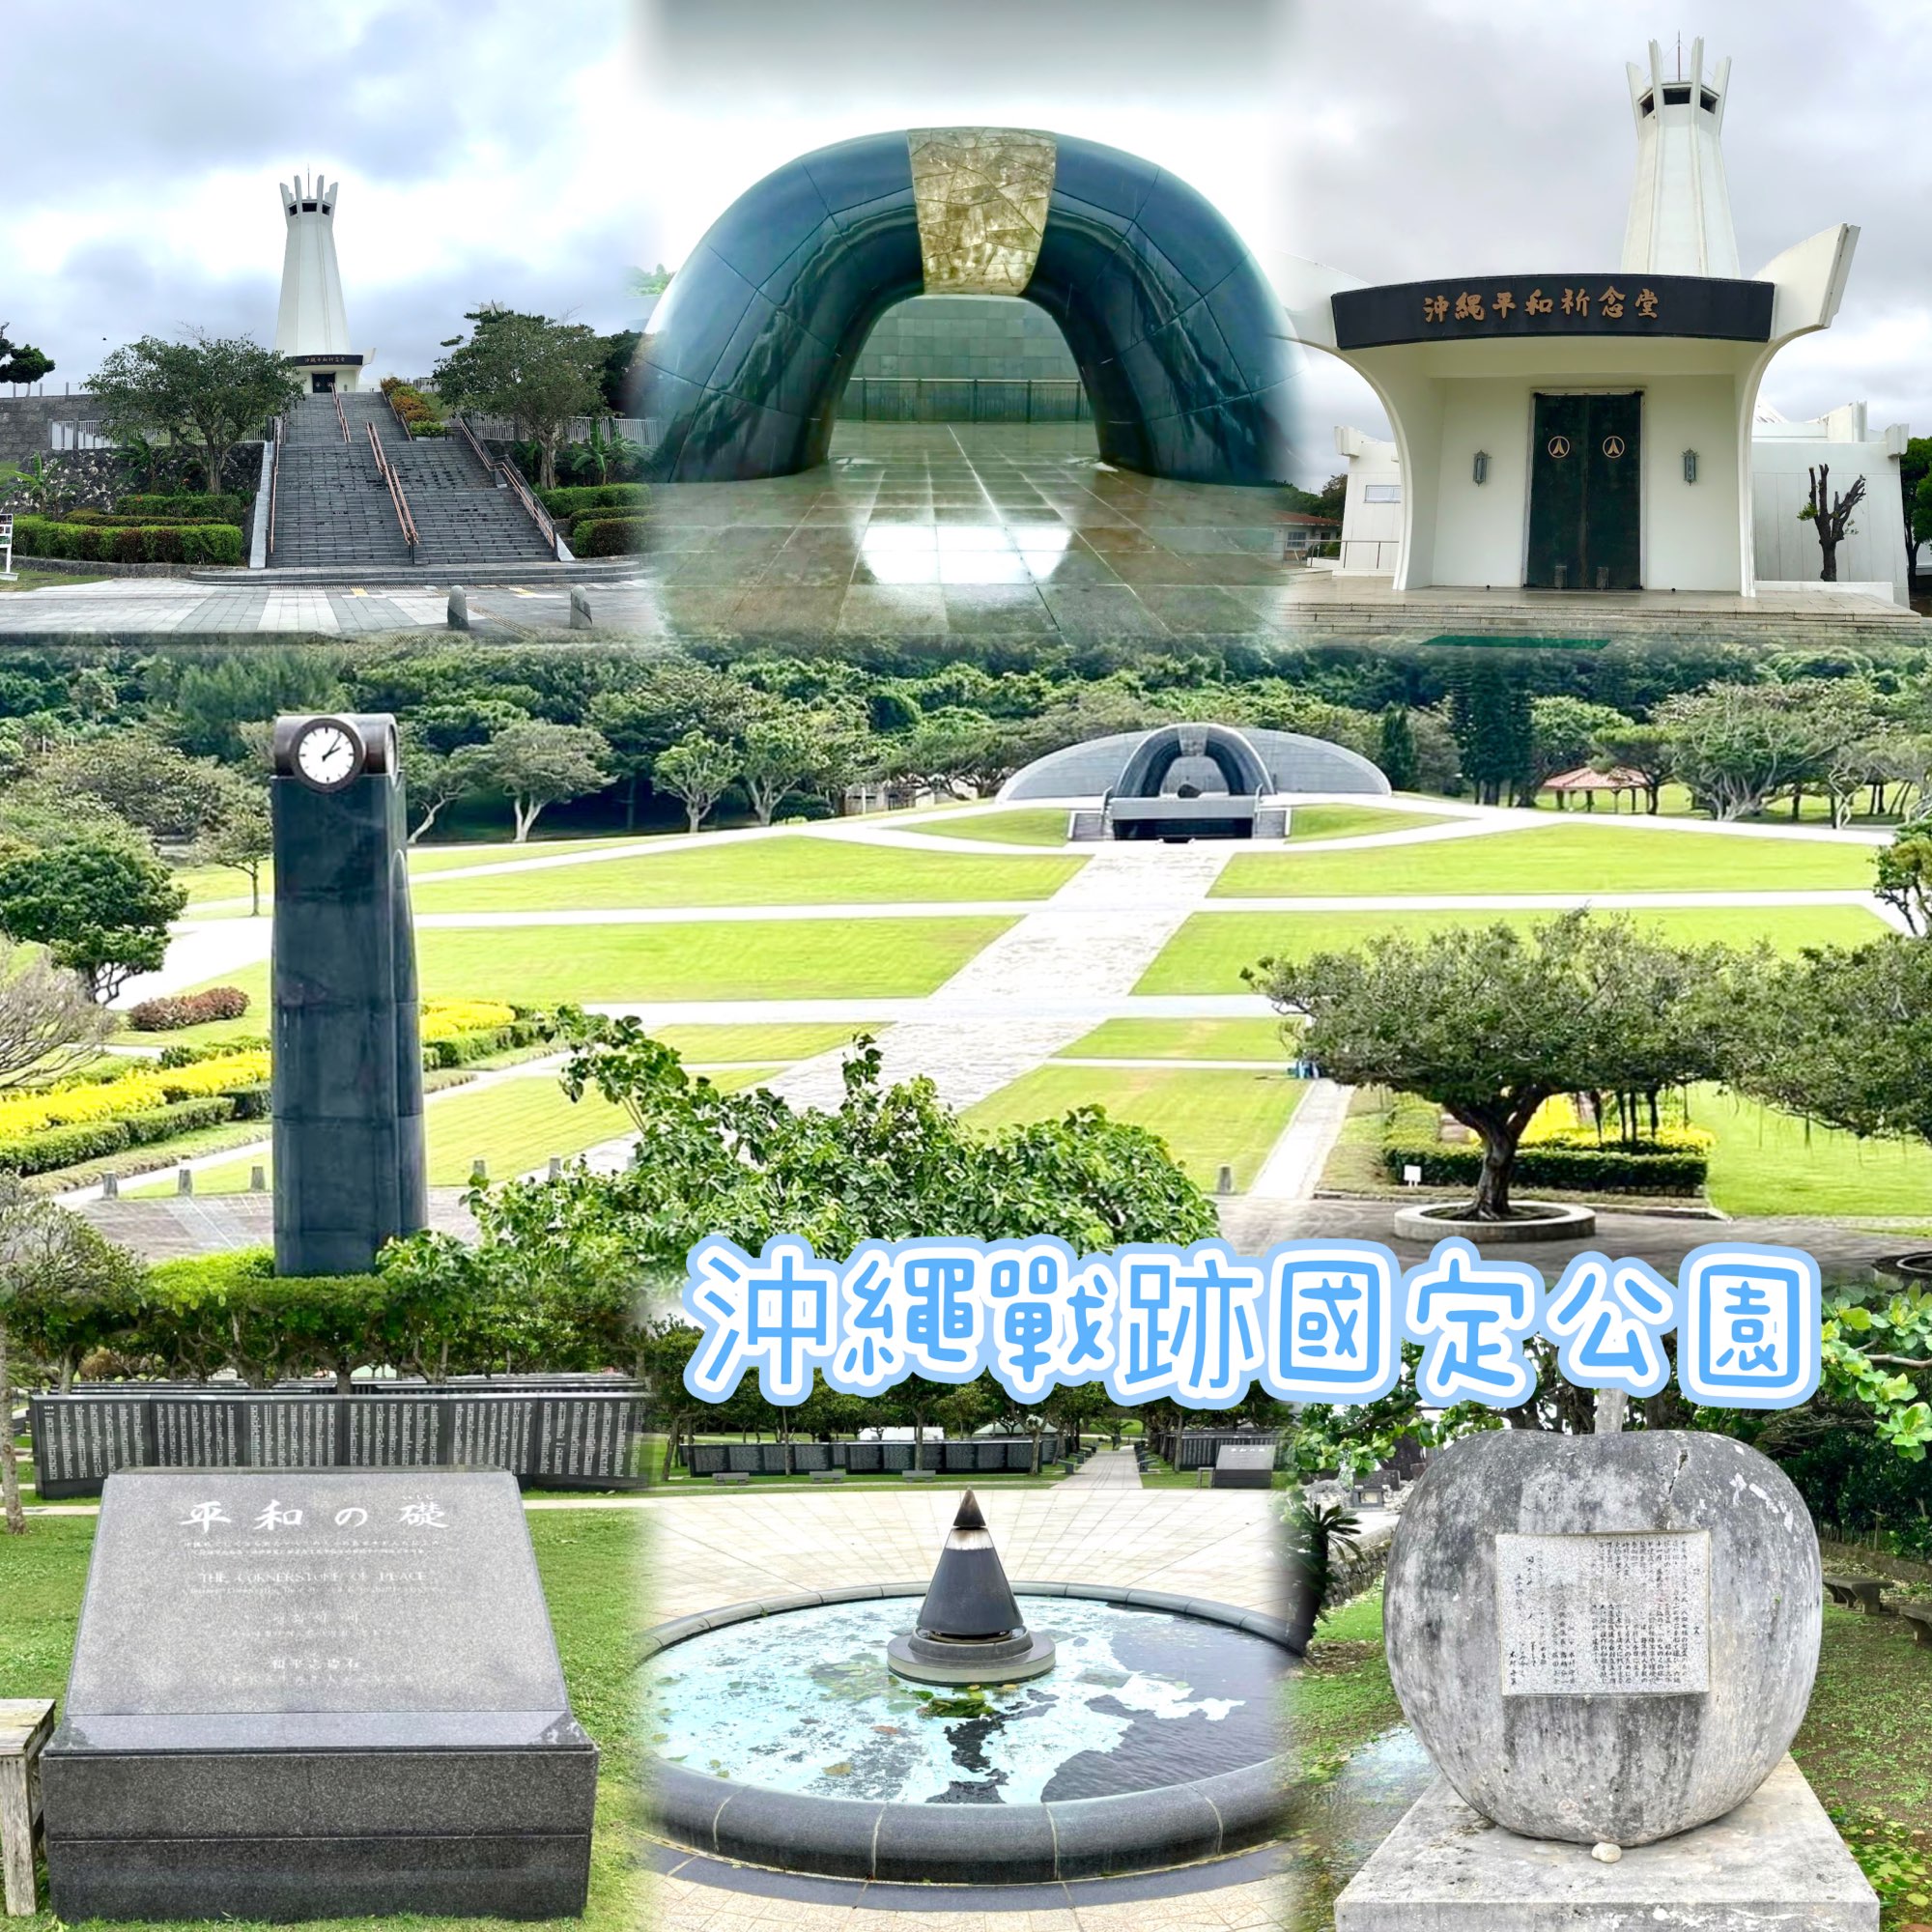 冲绳战迹国定公园-了解战争的可怕，反思和平的重要性